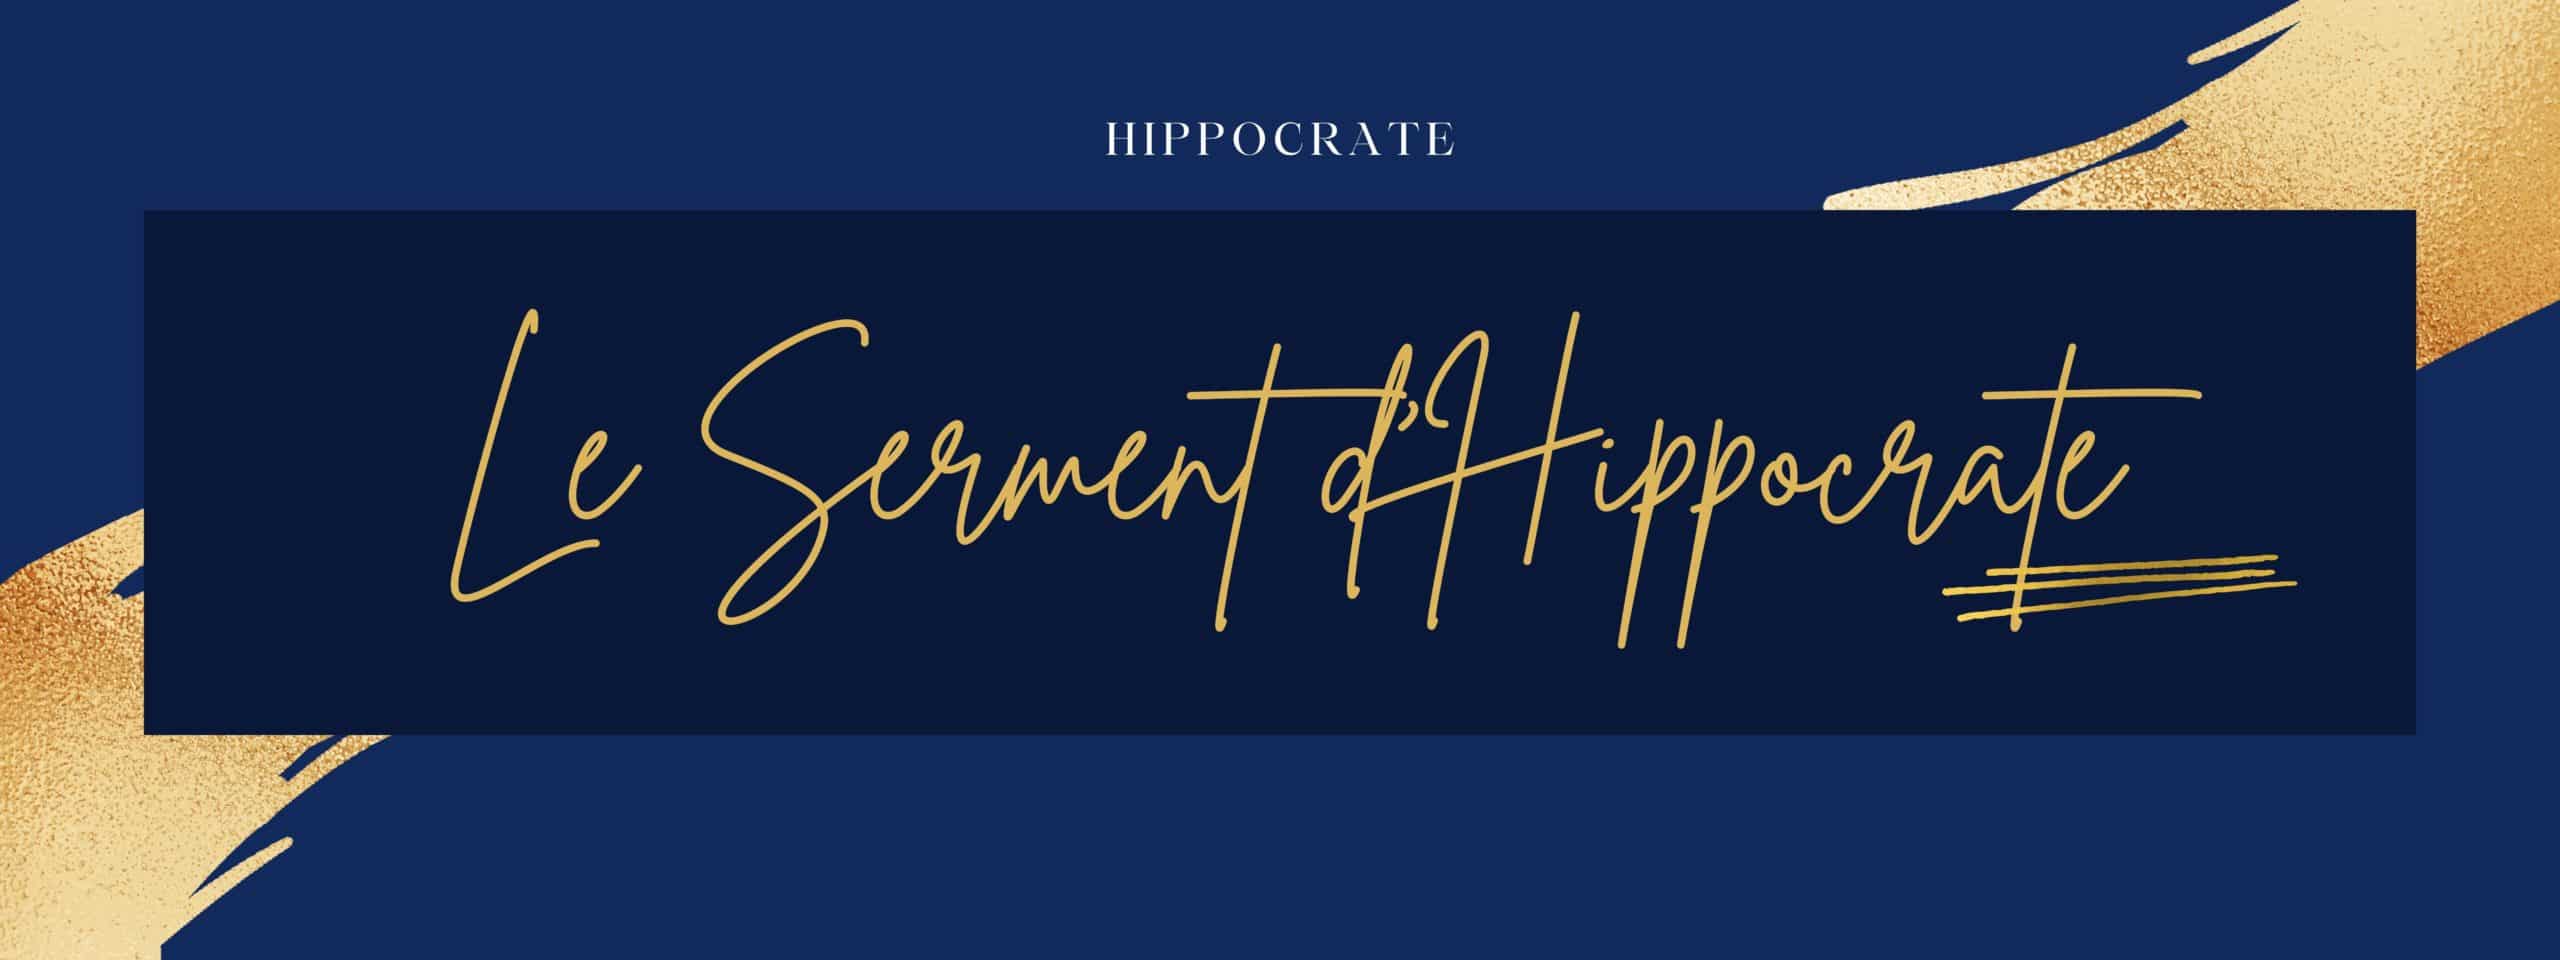 Le serment d’Hippocrate